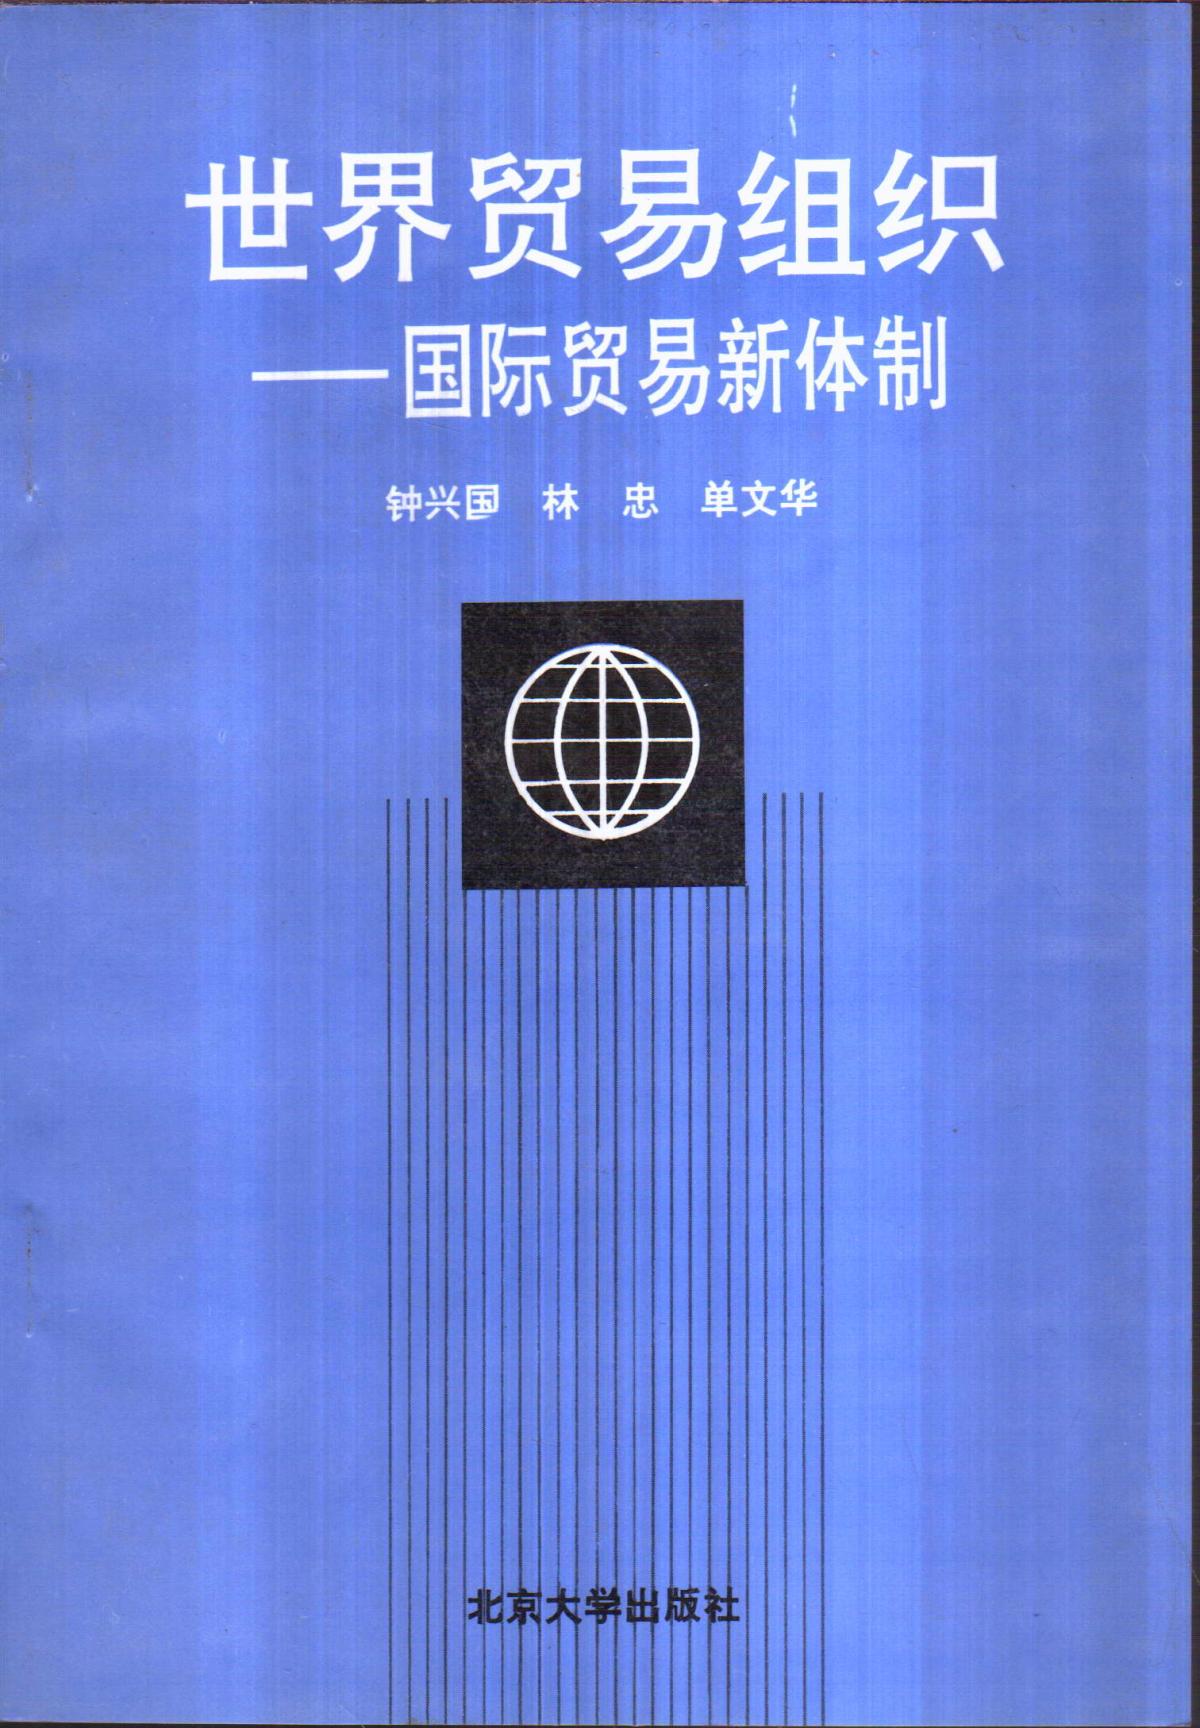 世界贸易组织——国际贸易新体制